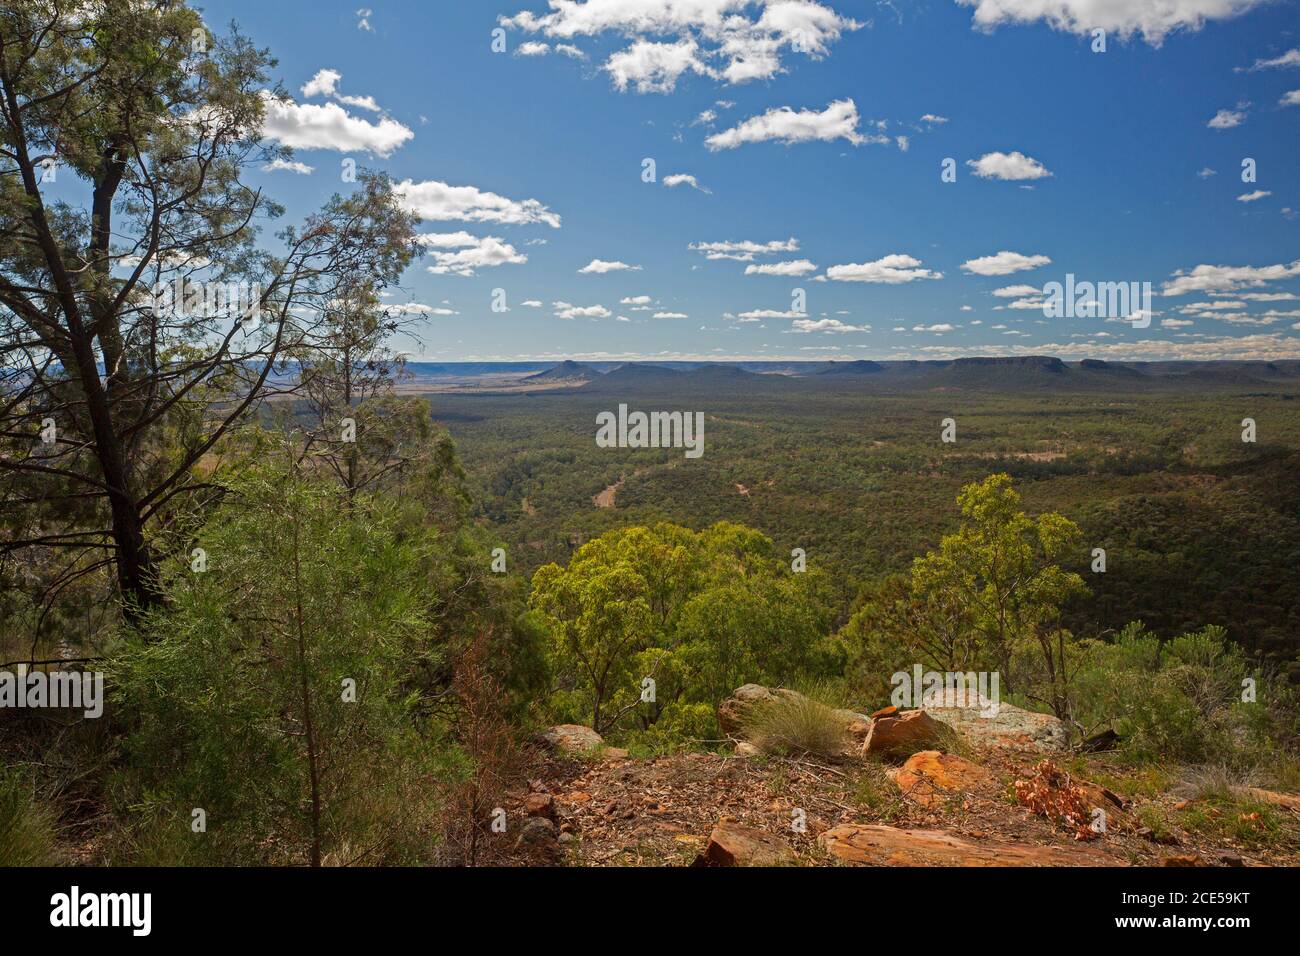 Paysage de collines et de vastes forêts d'eucalyptus vues de haut Guettez l'extrémité sud de la vallée d'Arcadia dans le centre du Queensland Australie Banque D'Images